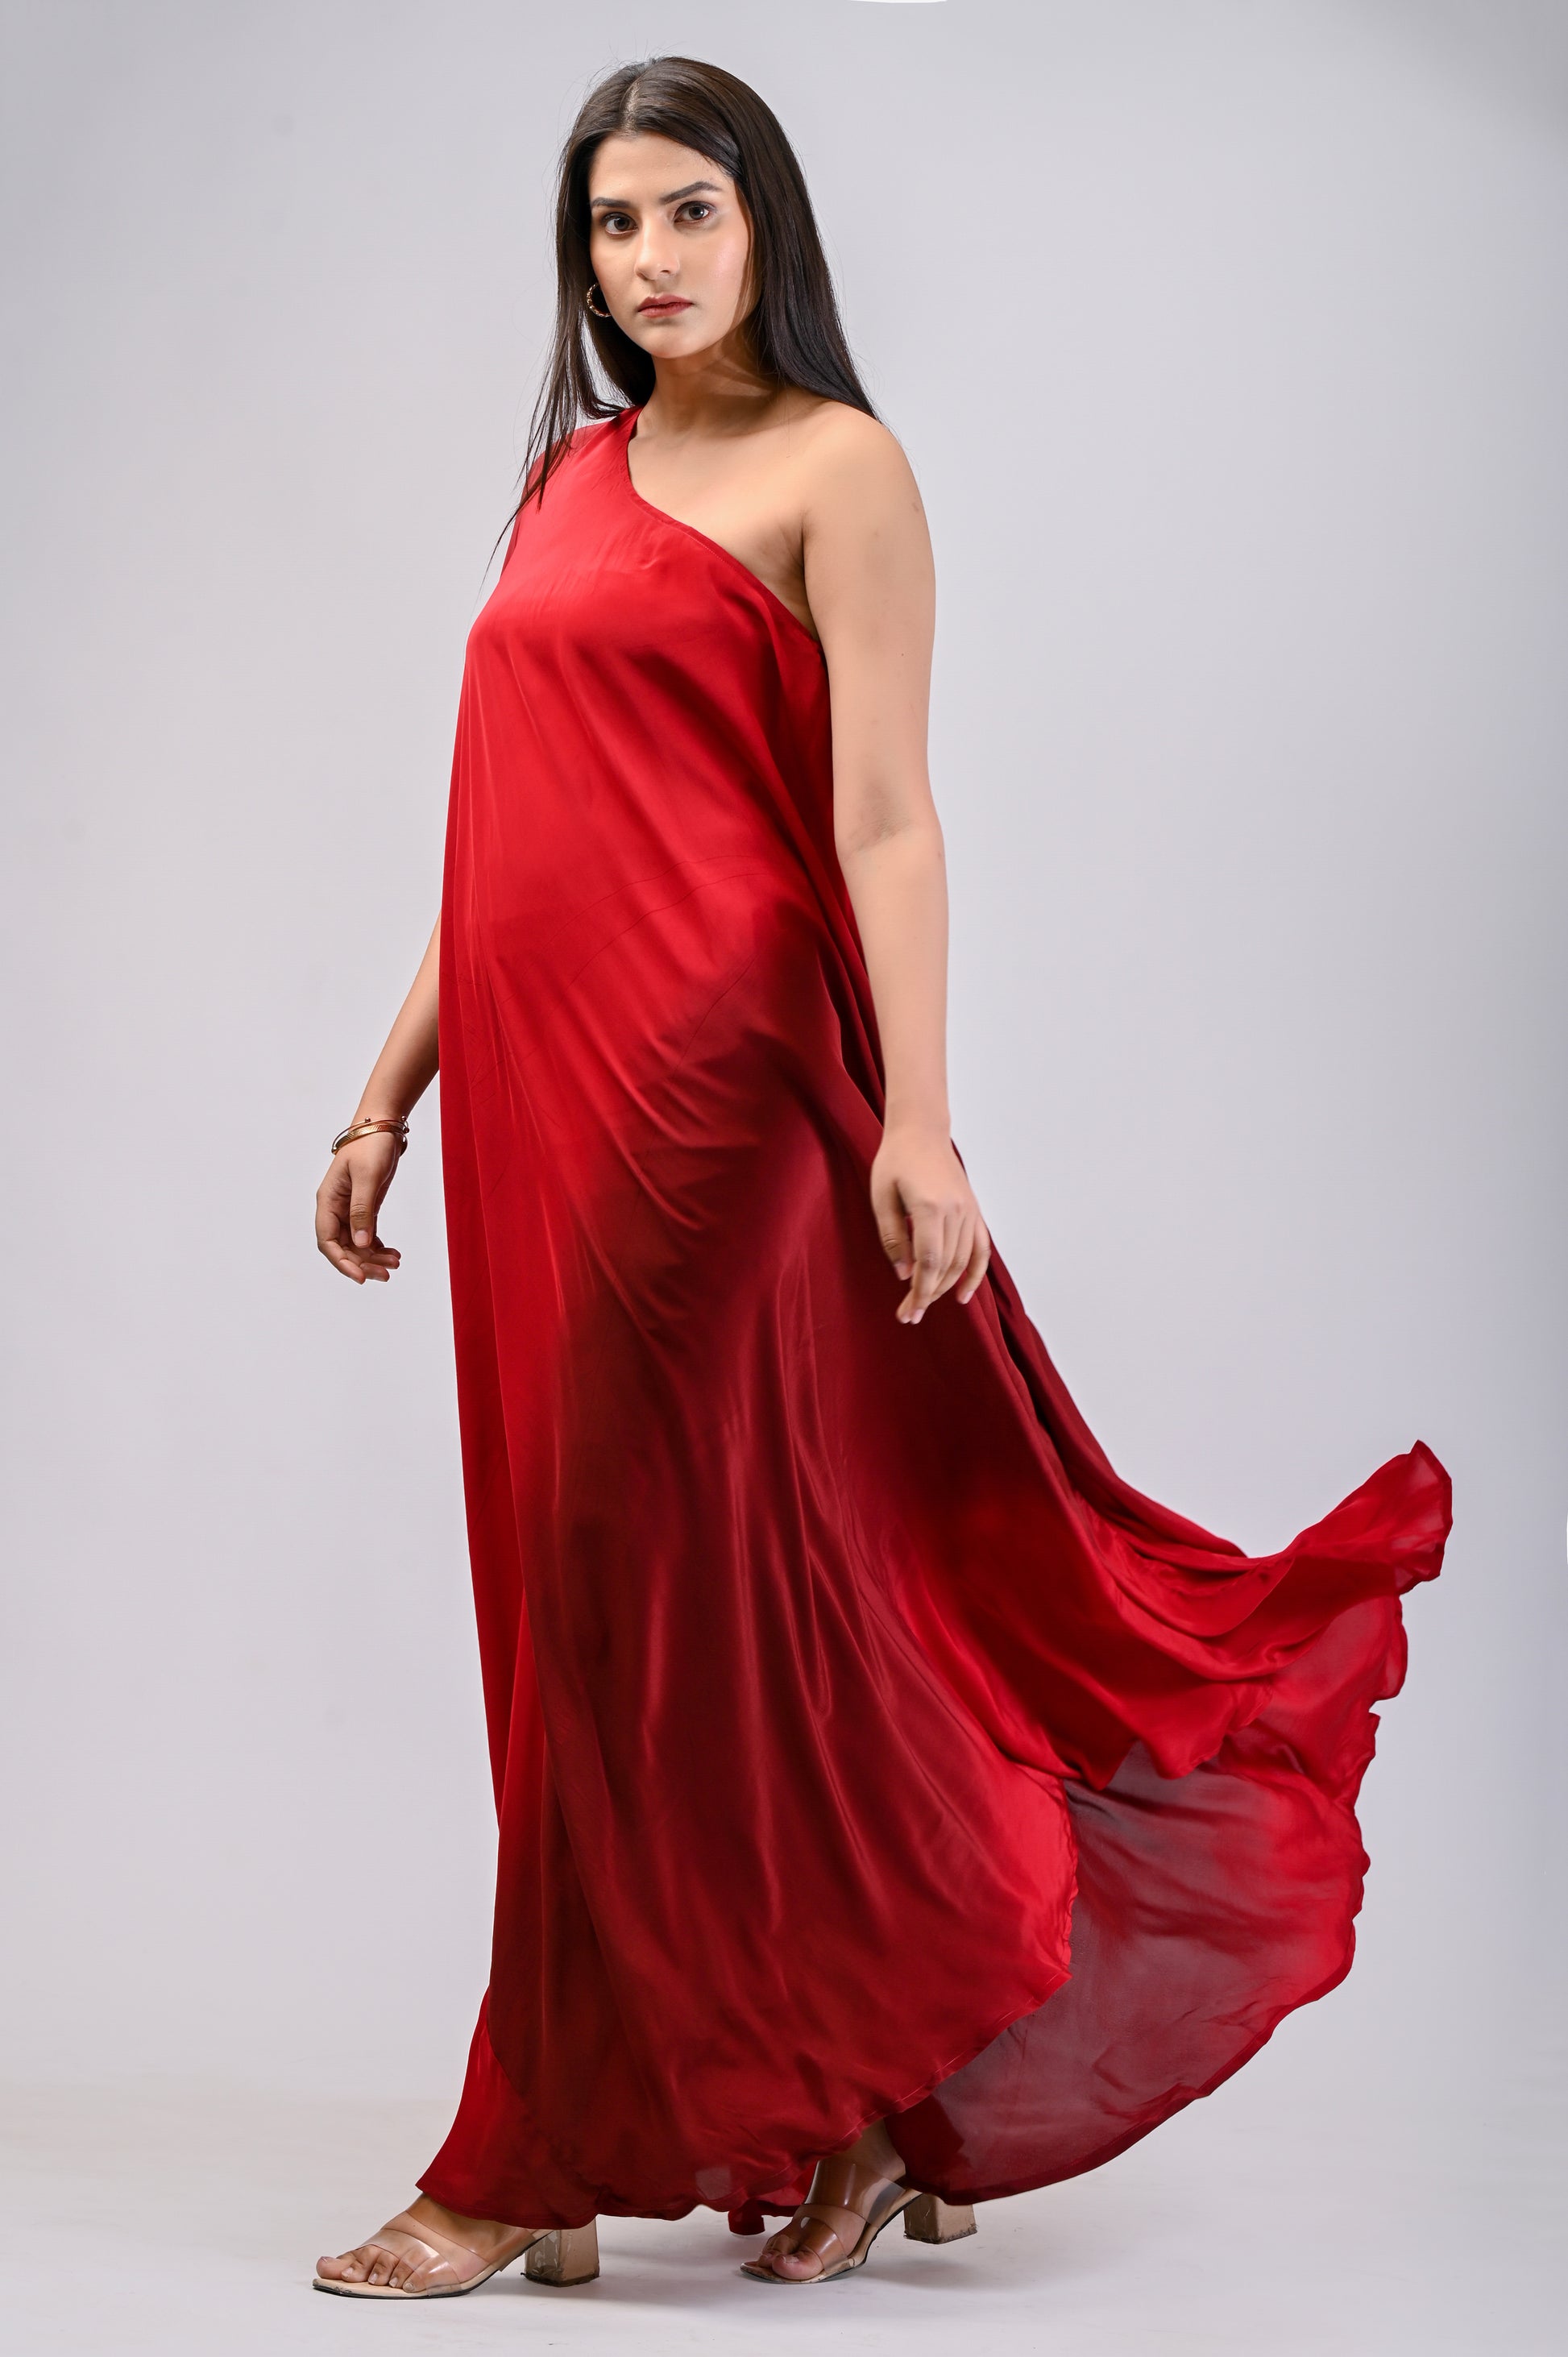 gown haul😘 party wear dresses haul/myntra haul/flipkart gown haul 😘Amazon  party wear gown haul - YouTube